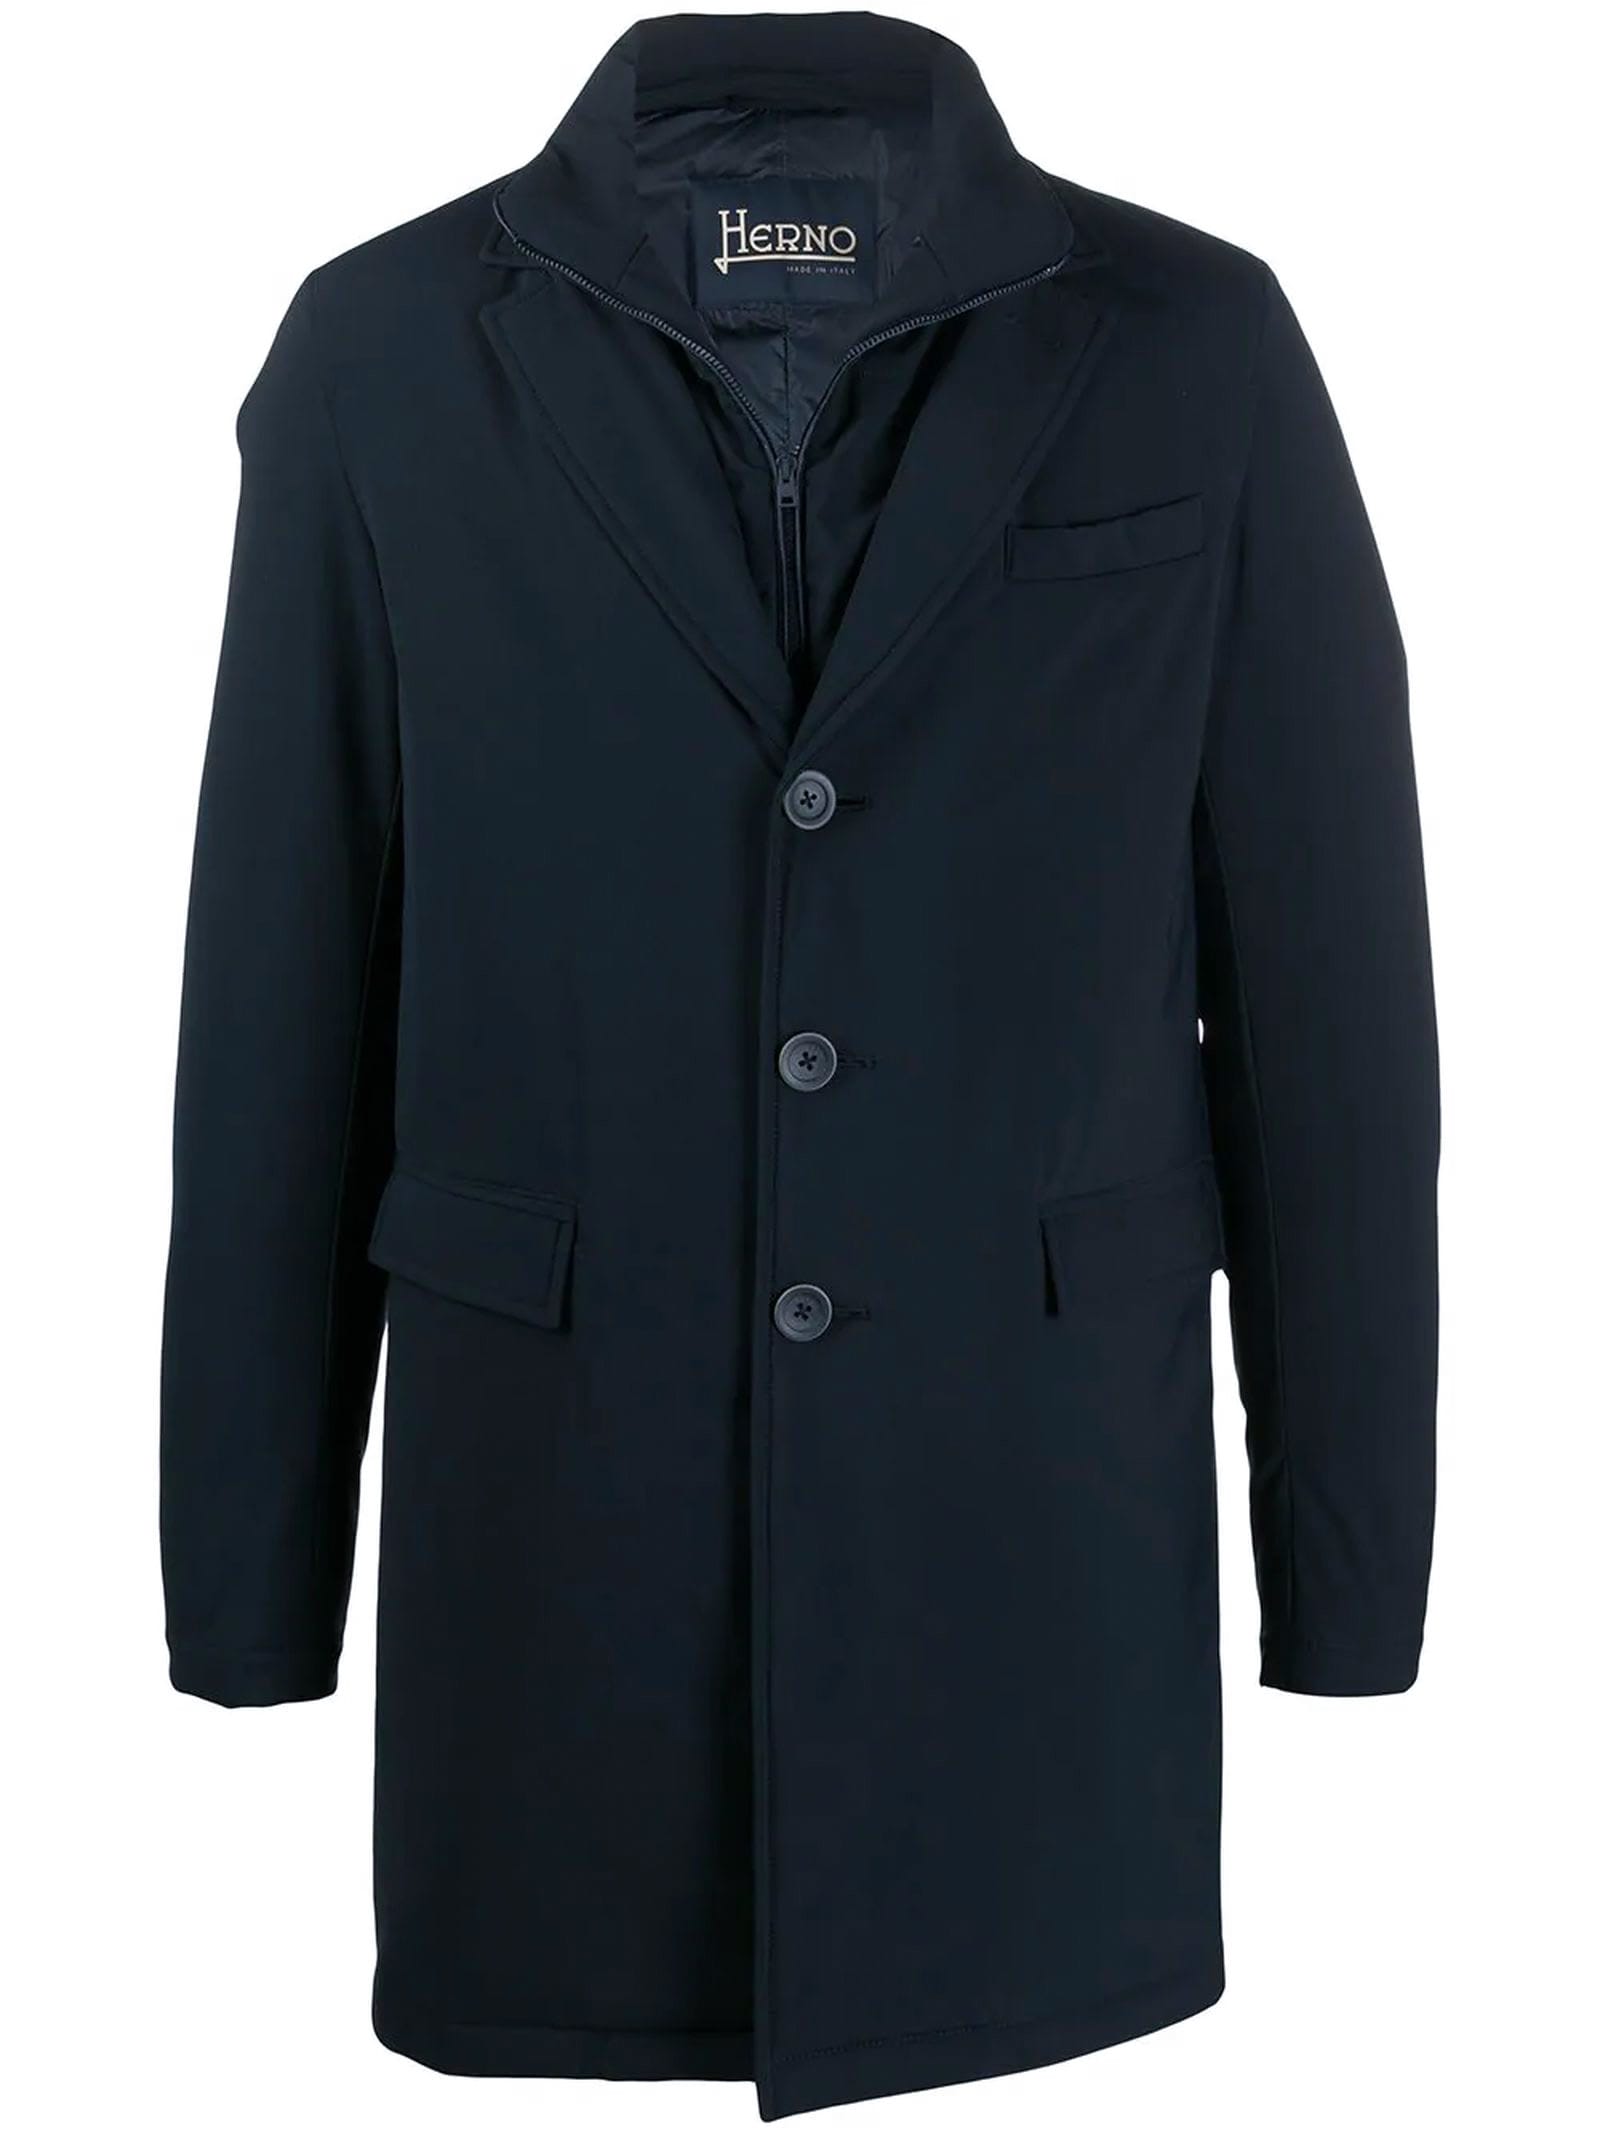 Herno Coat In Dark Blue Bi-stretch Laminated Fabric.